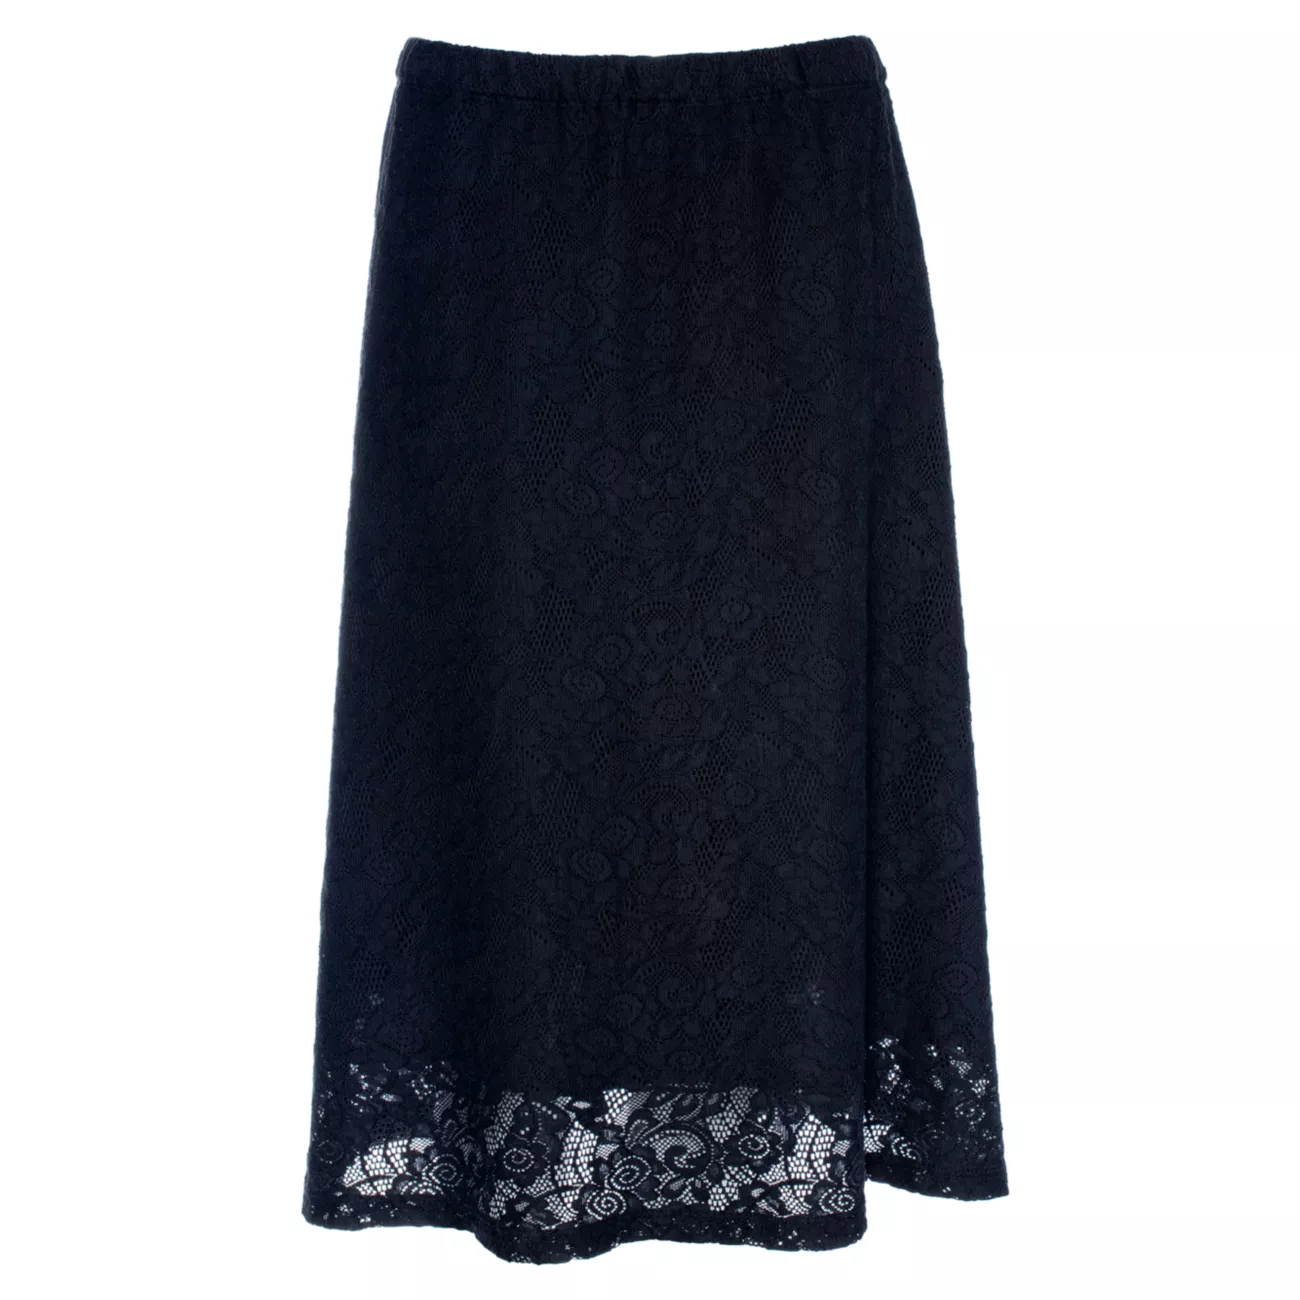 Кружевная юбка-трапеция с прозрачным подолом на частичной подкладке Wilt